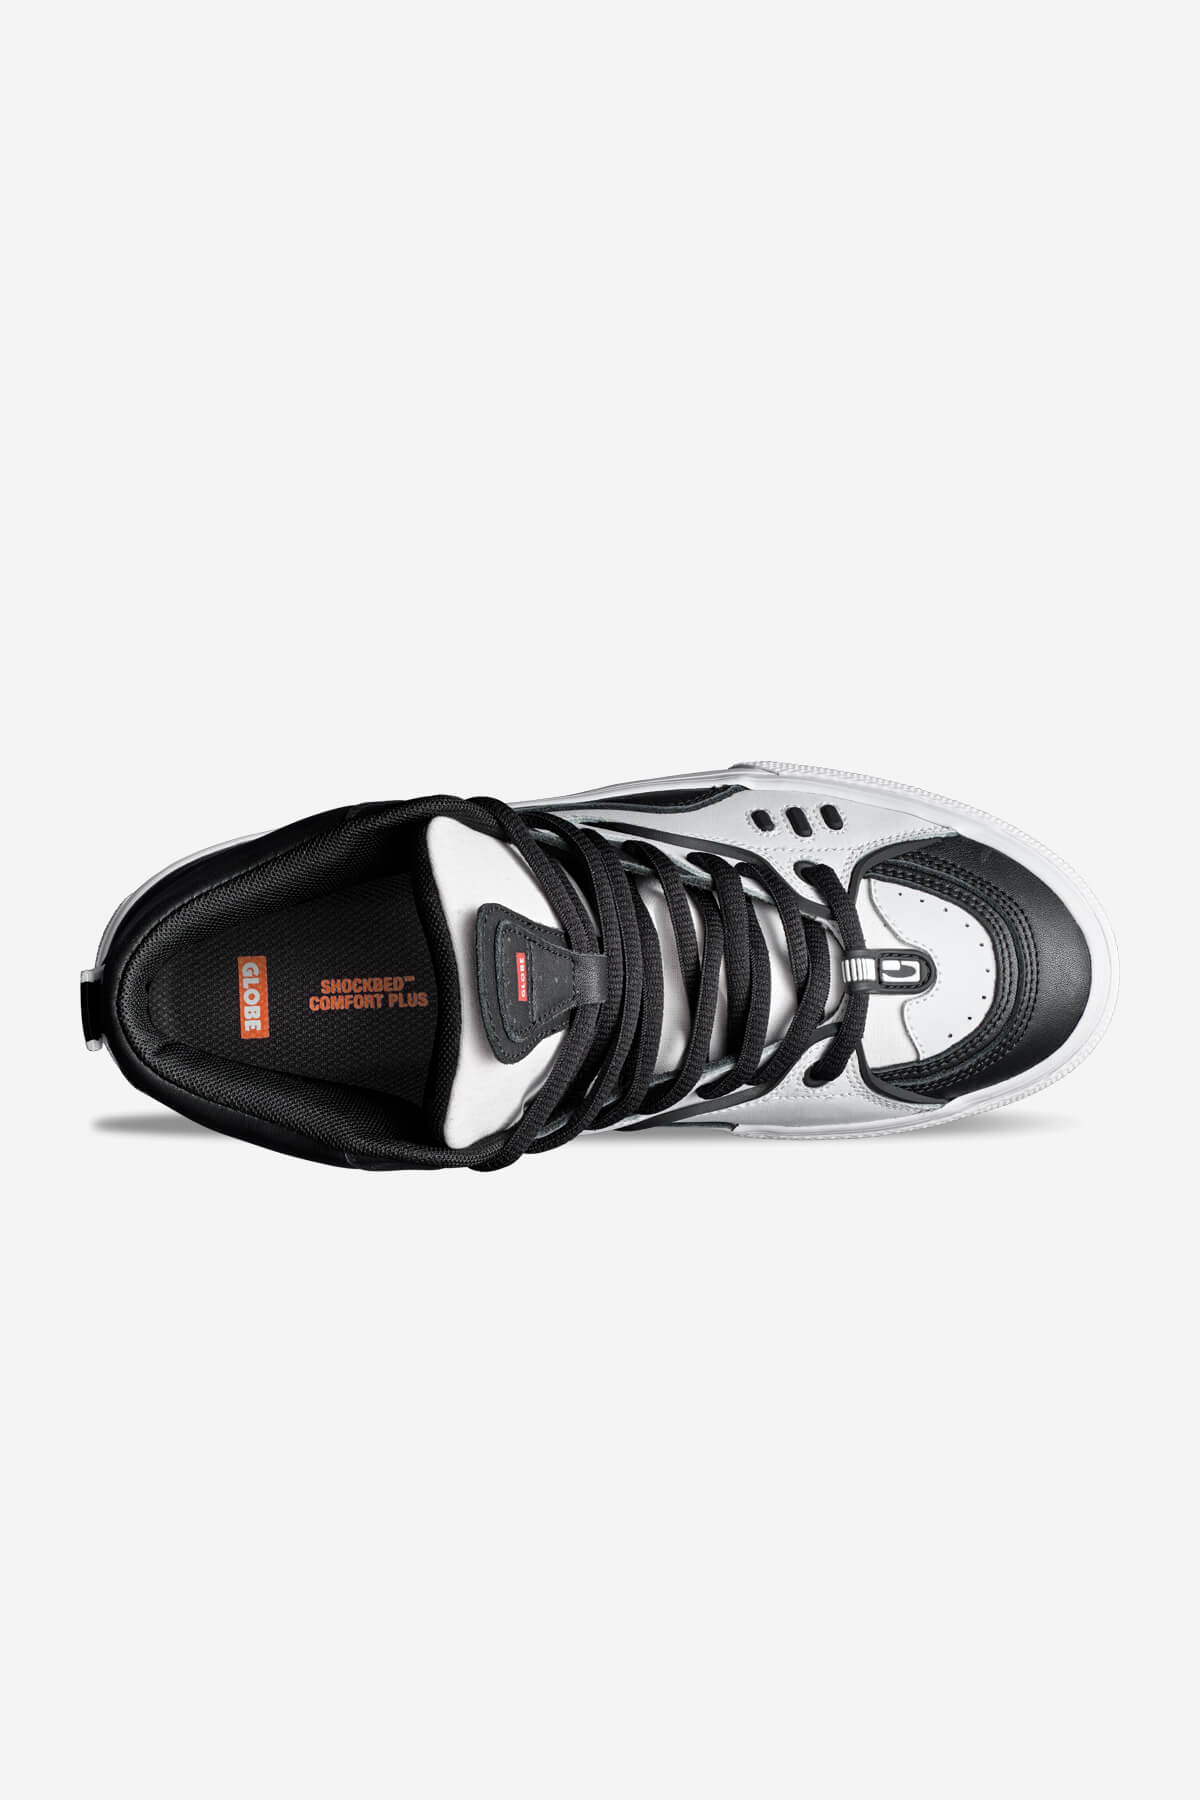 Globe Scarpe medie Dimension skateboard  scarpe in Black/White